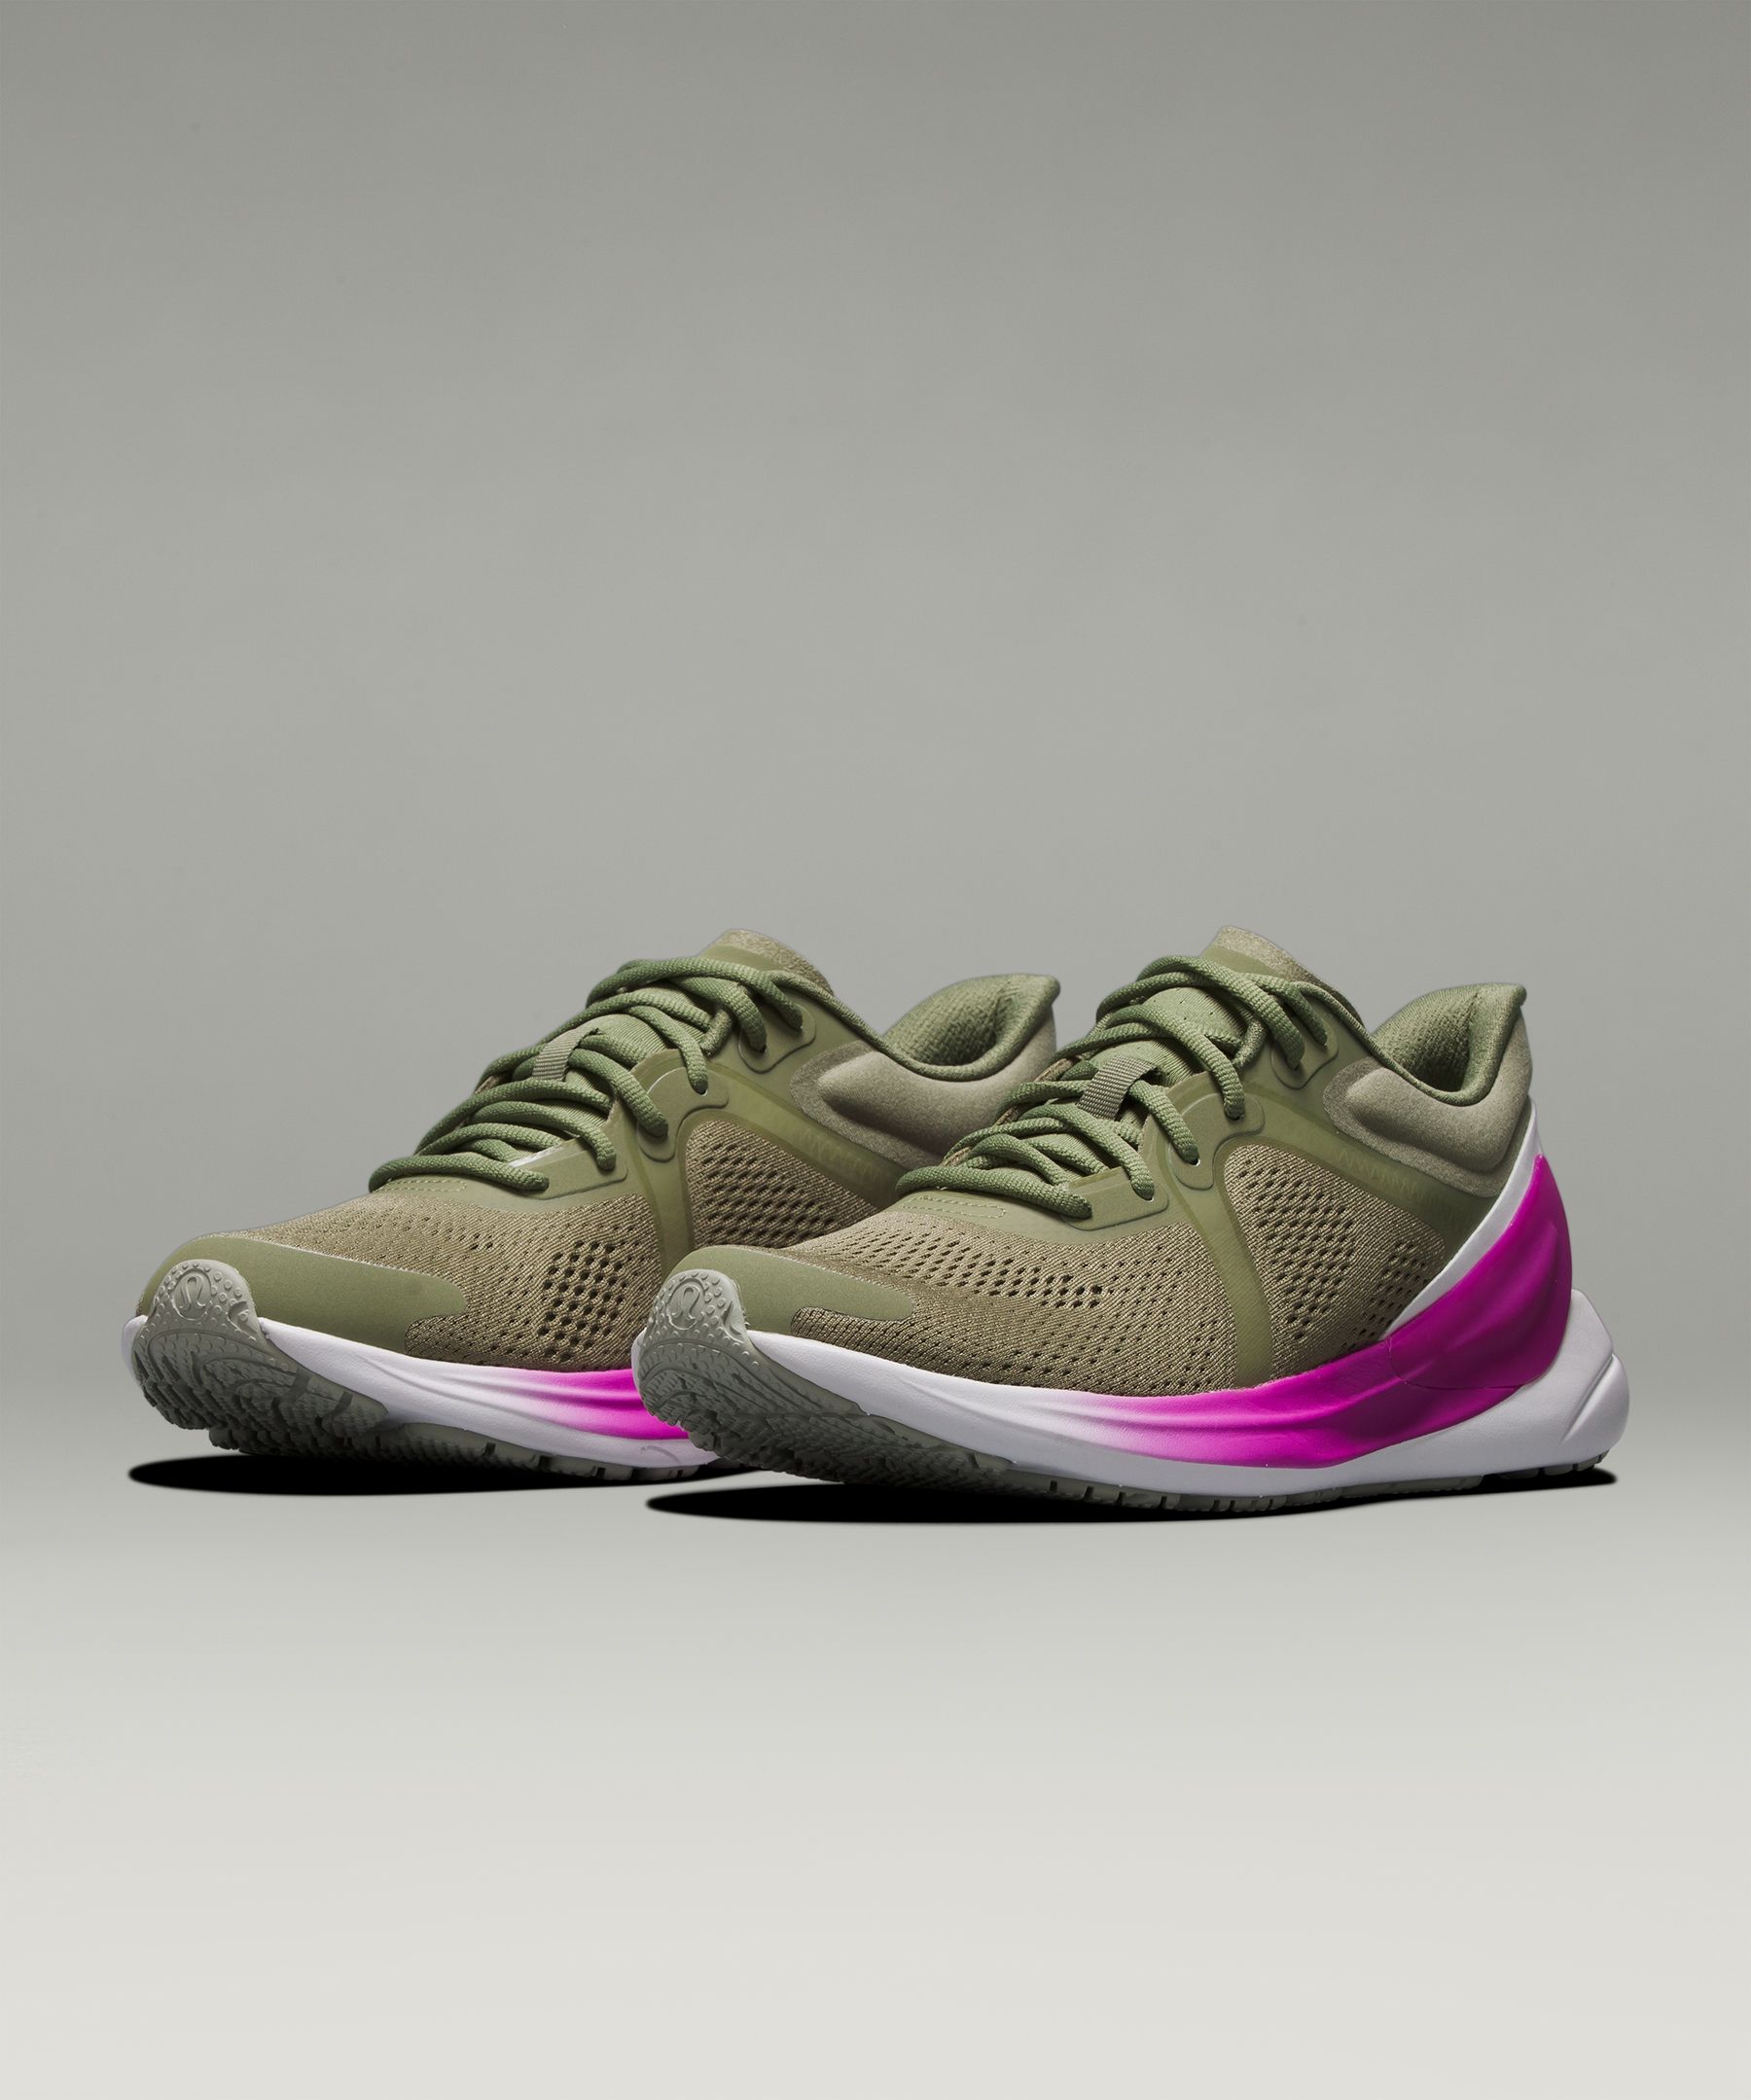 Lululemon Blissfeel Women's Running Shoes In Green/olive/pink